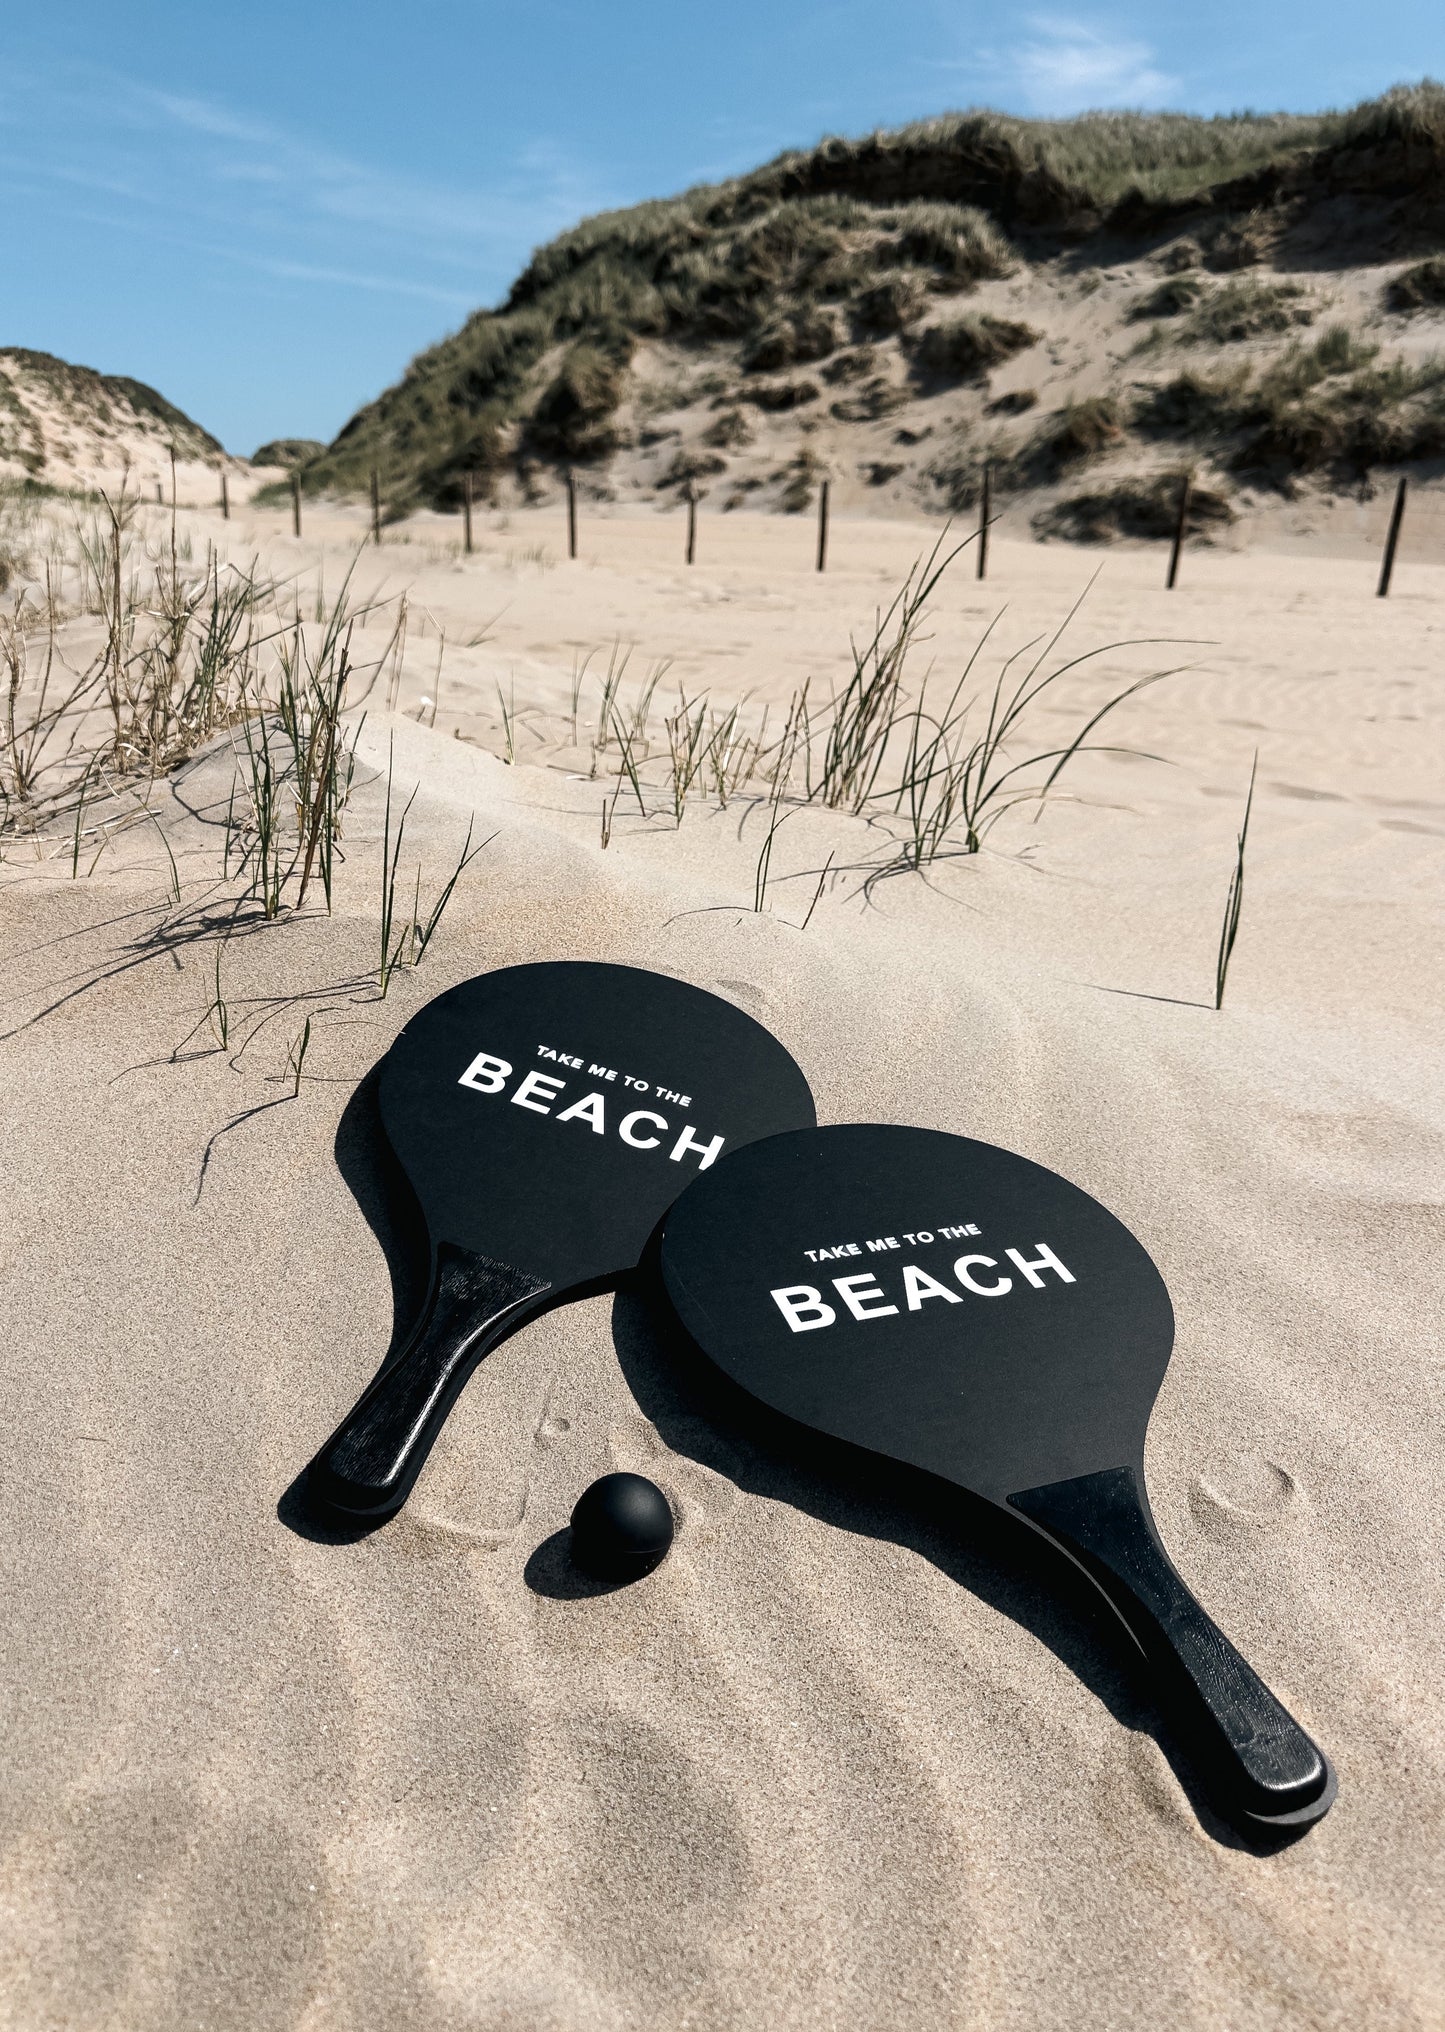 huisje van sanne stijlvolle zwart witte beach tennis rackets. De leukste strand batjes voor jouw vakantie.